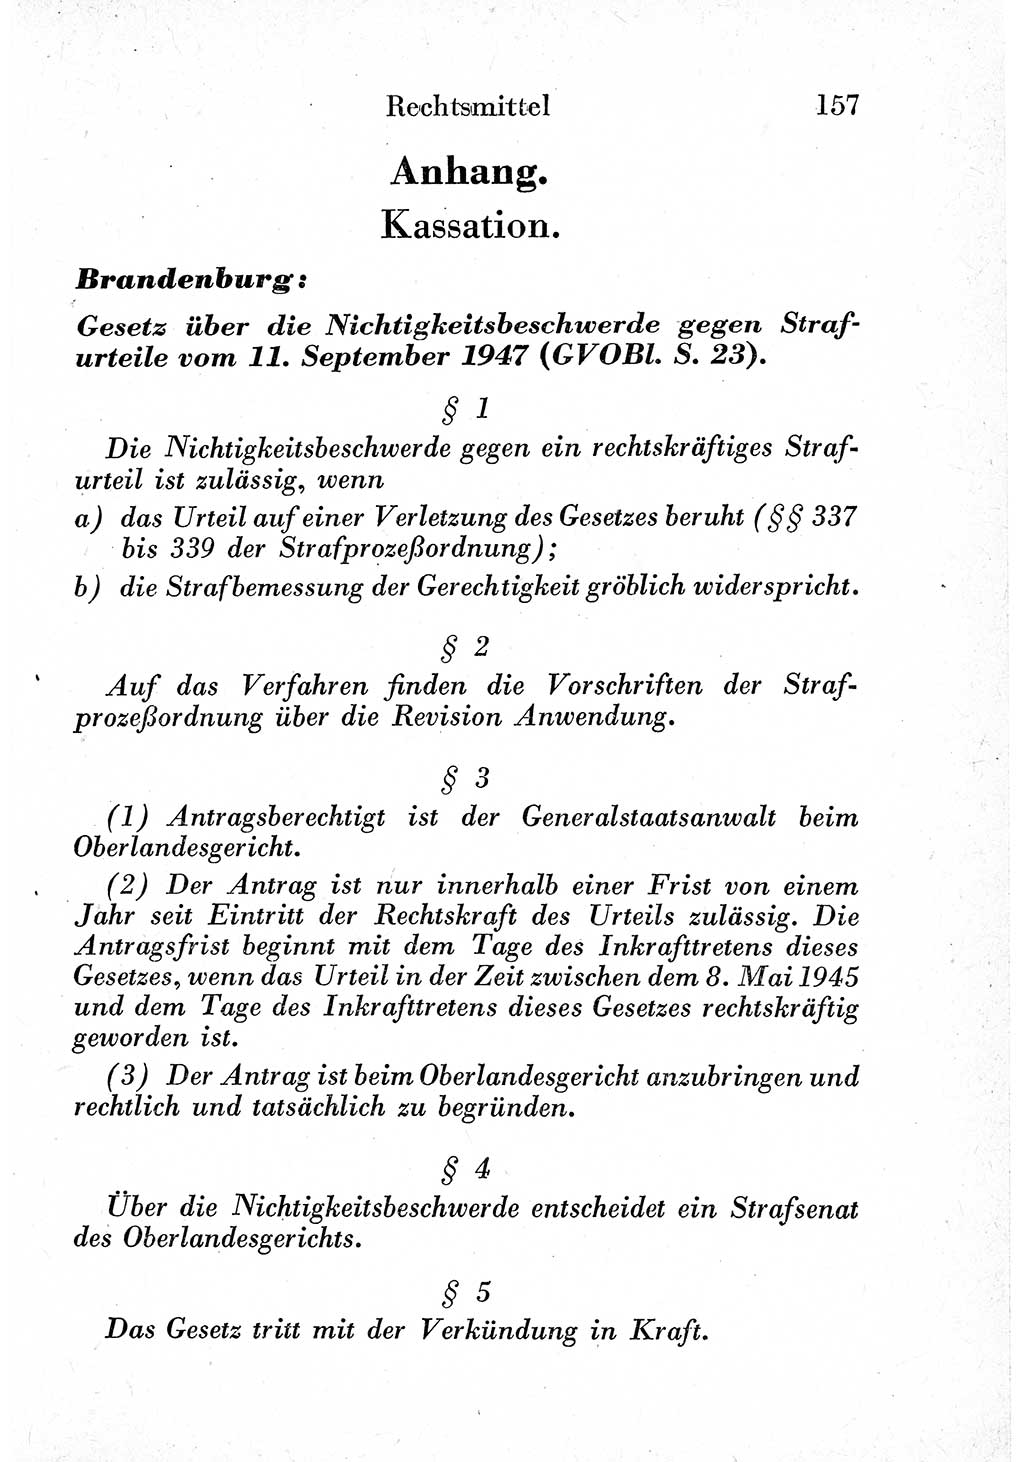 Strafprozeßordnung (StPO), Gerichtsverfassungsgesetz (GVG) und zahlreiche Nebengesetze der sowjetischen Besatzungszone (SBZ) in Deutschland 1949, Seite 157 (StPO GVG Ges. SBZ Dtl. 1949, S. 157)